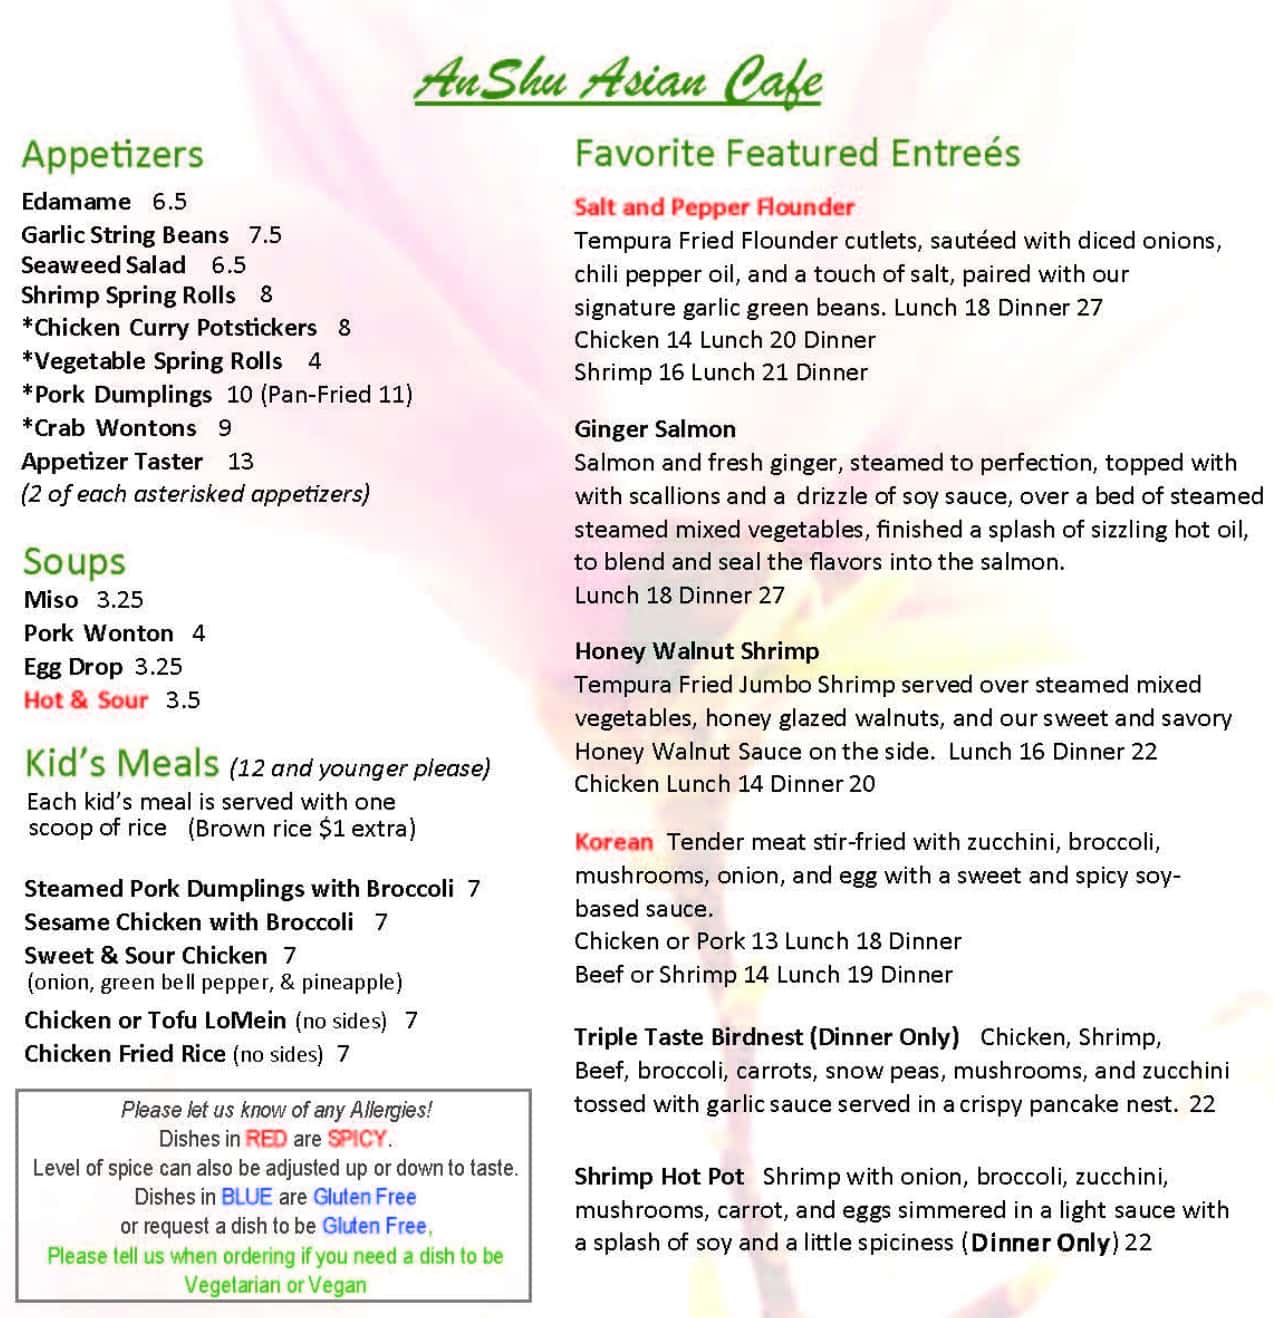 AnShu Asian Cafe Main Menu